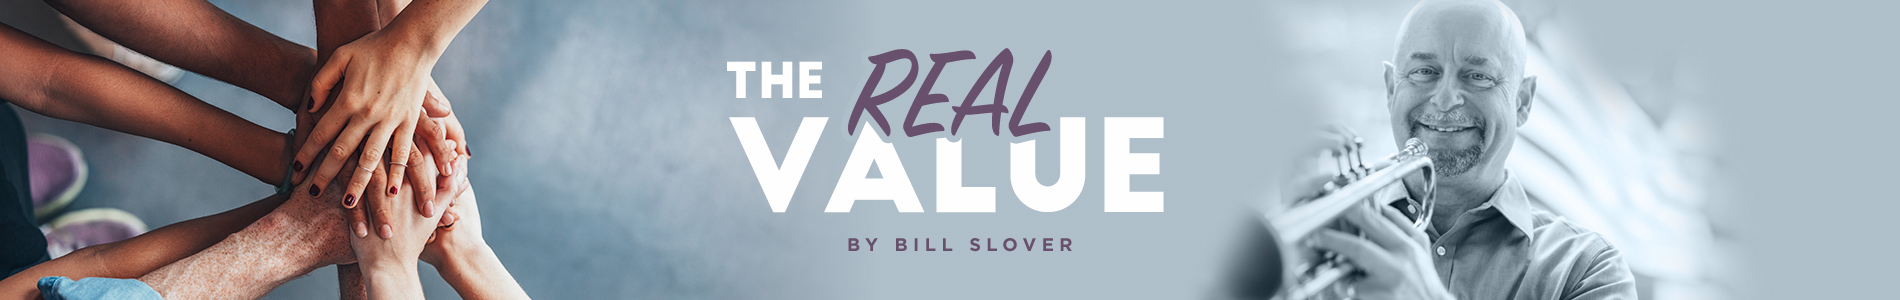 realvalue blogheader